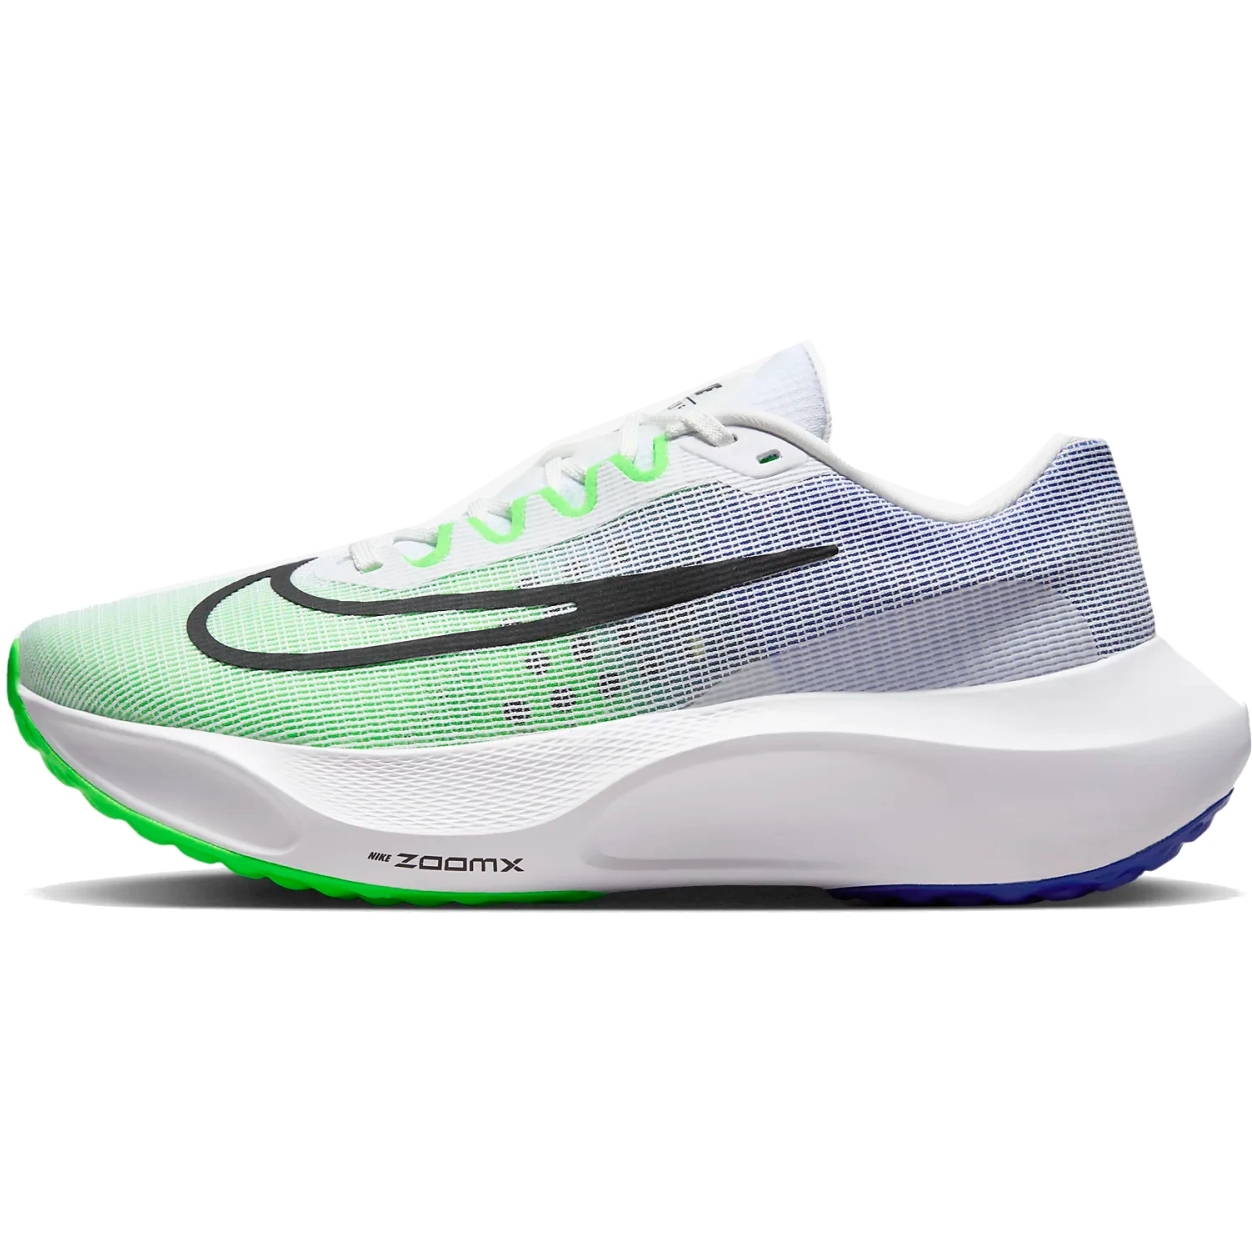 Foto de Nike Zapatillas de correr Hombre - Zoom Fly 5 - white/green strike/racer blue/black DM8968-101